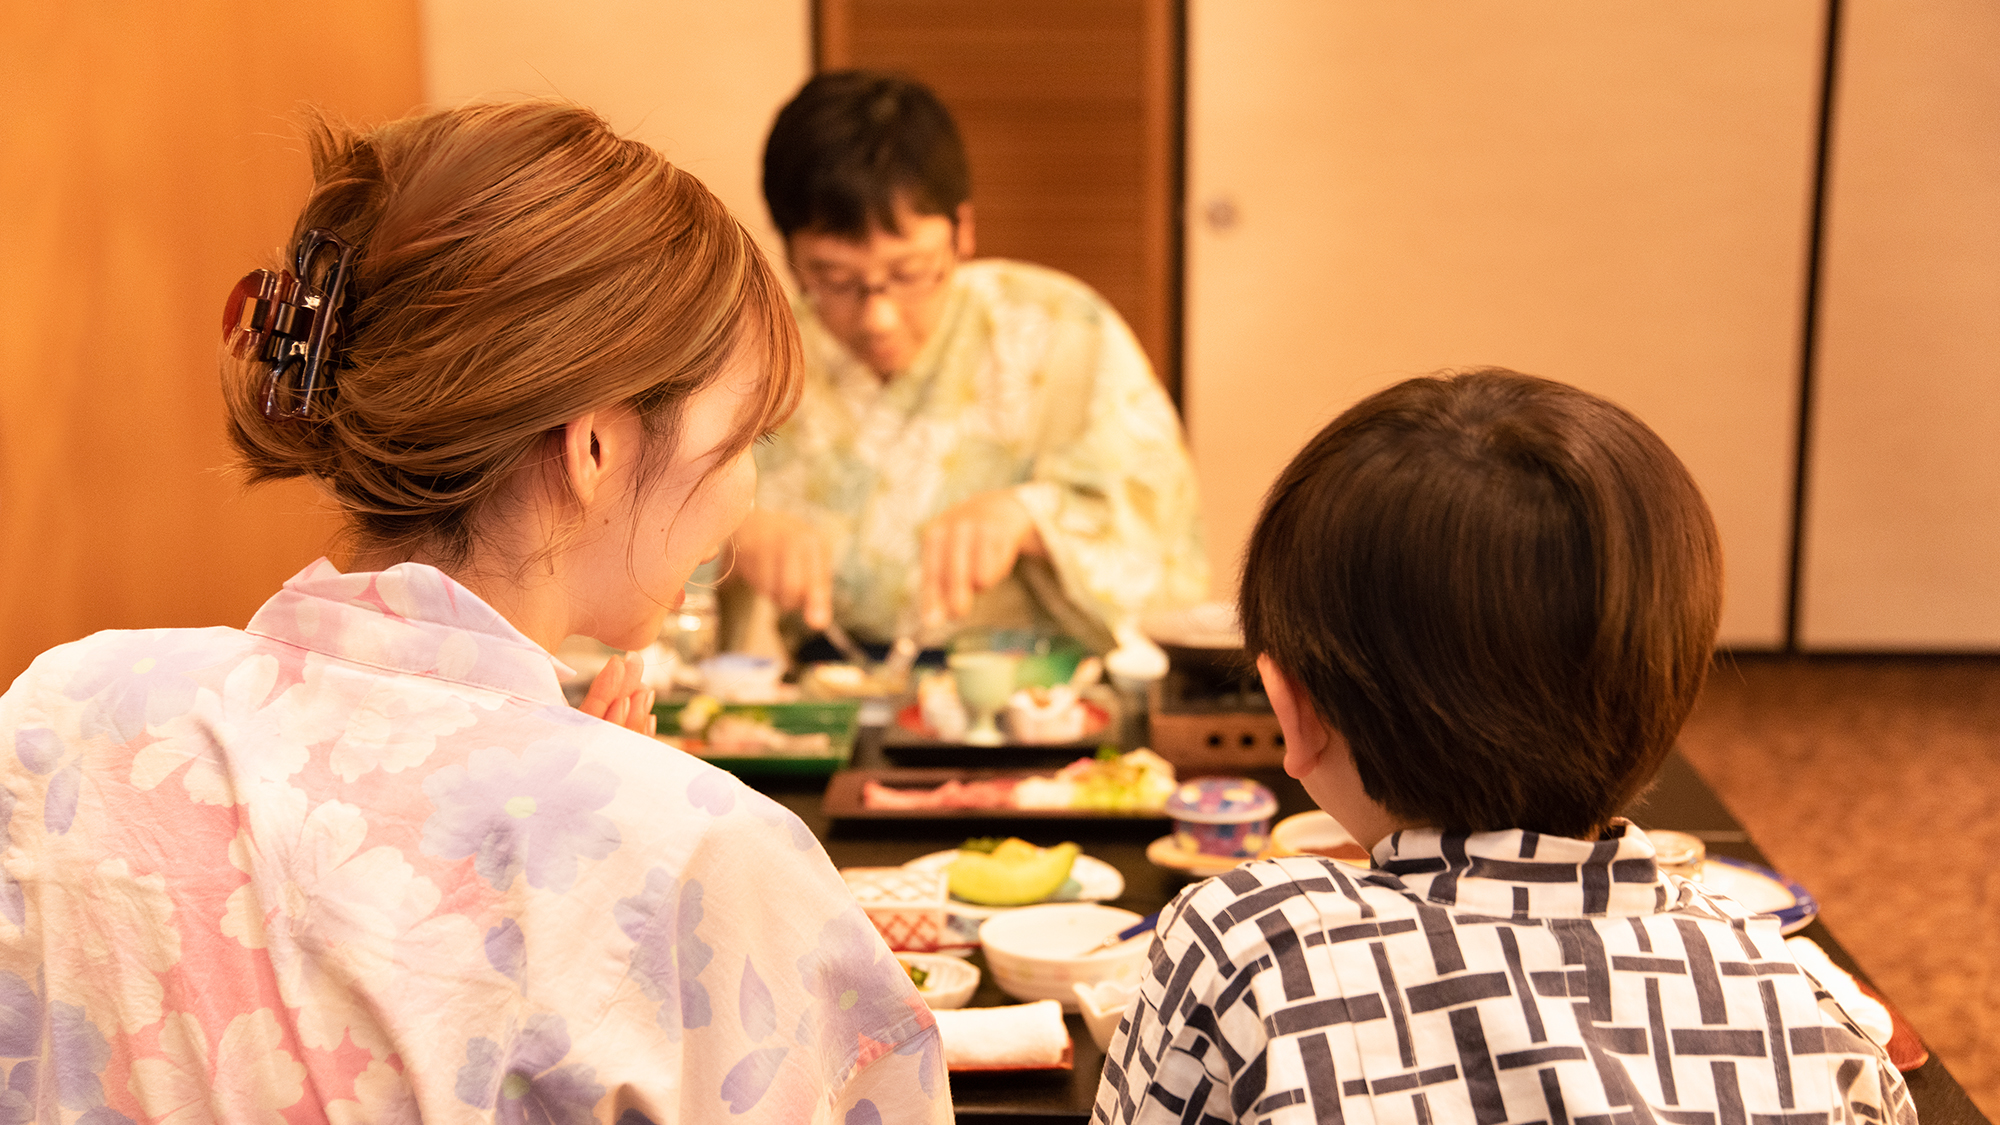 【滞在イメージ】地元食材をふんだんに使った和食会席に大喜び。